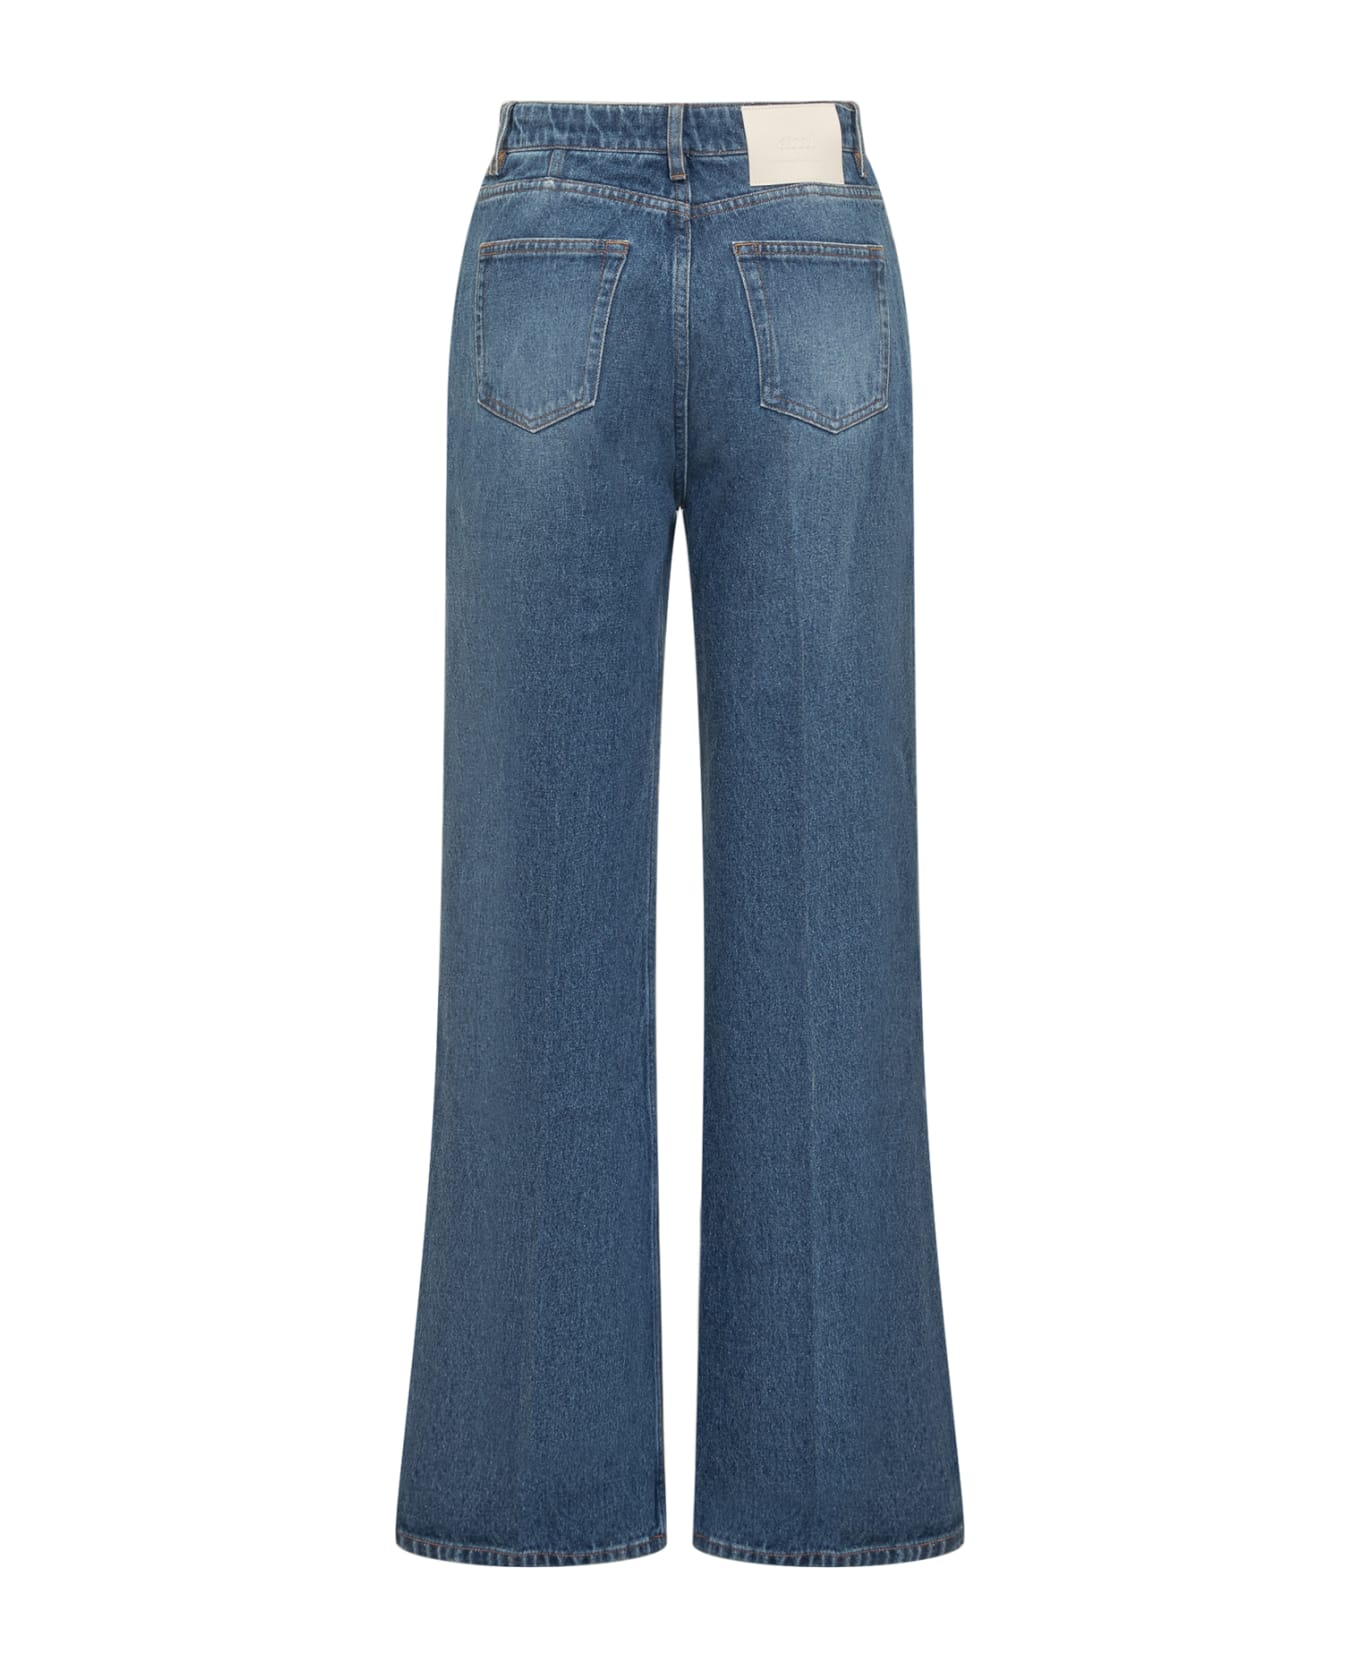 Ami Alexandre Mattiussi Flare Cotton Denim Jeans - USED BLUE